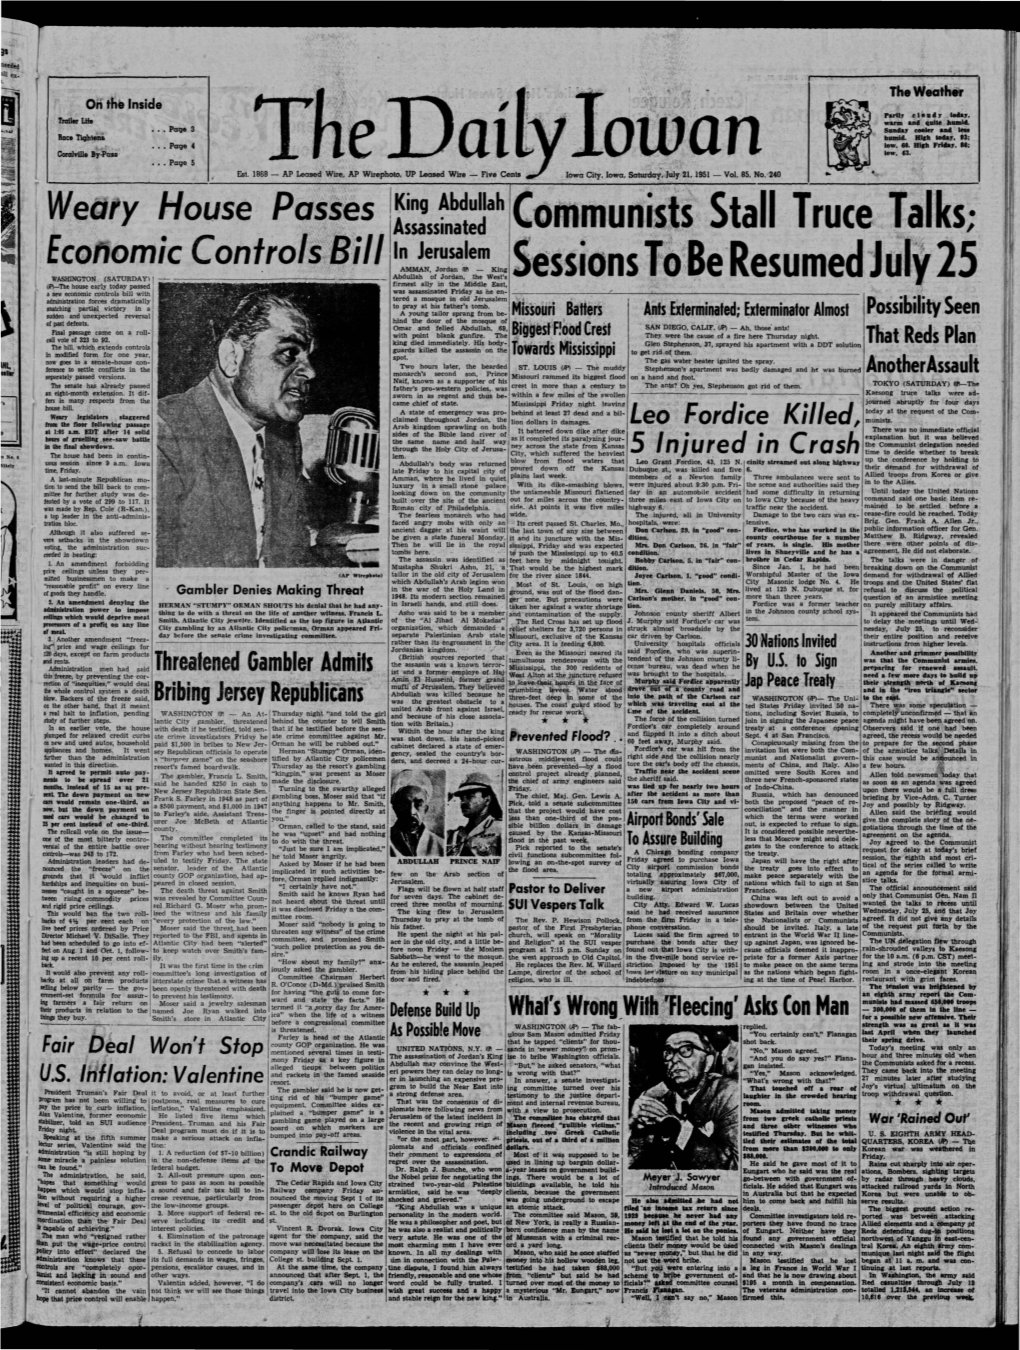 Daily Iowan (Iowa City, Iowa), 1951-07-21